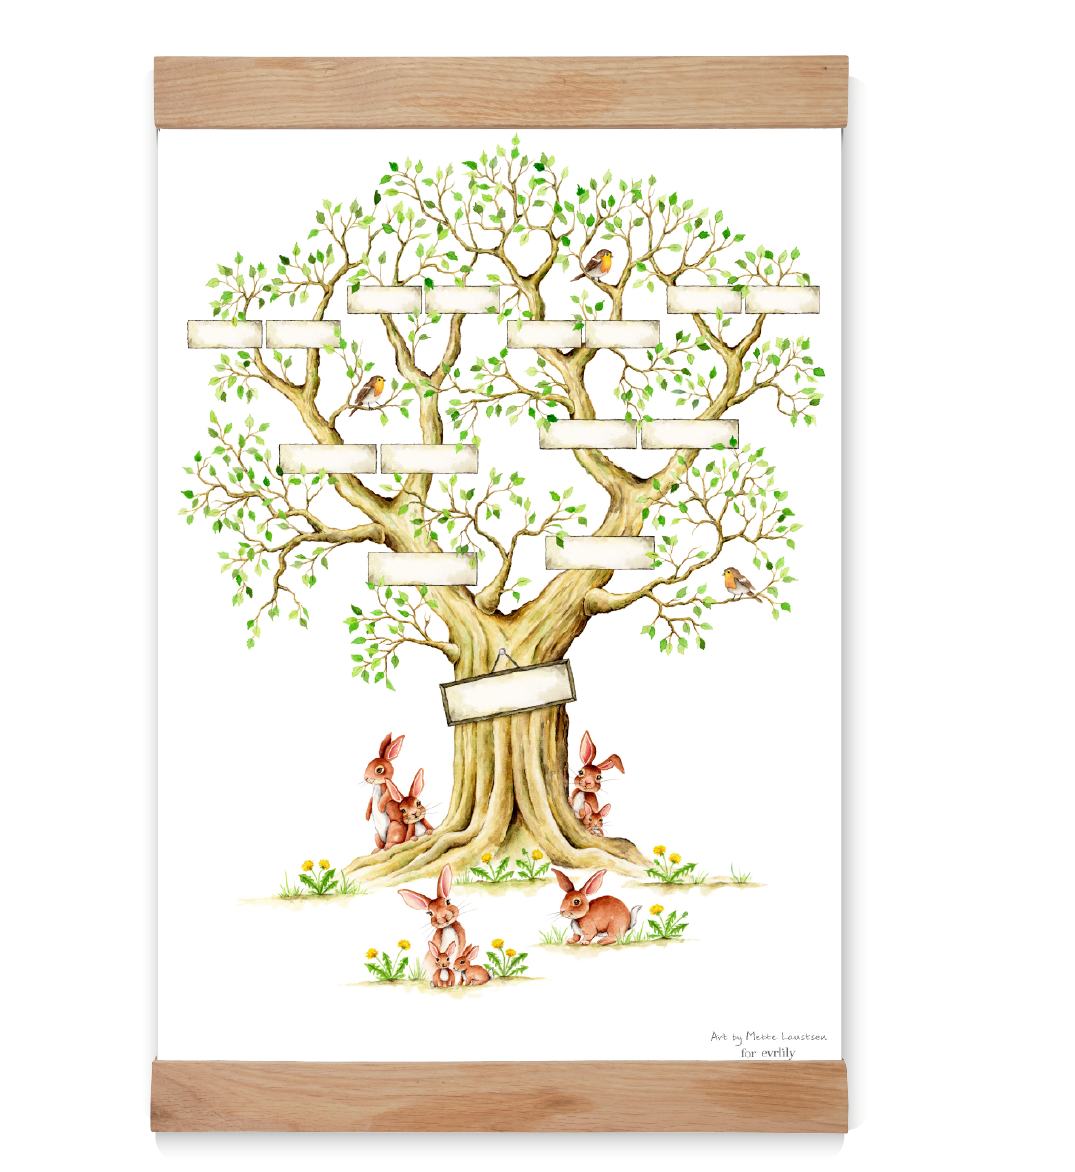 udfyld selv stamtræ, personlig kunst, art By Mette laustsen, personligt plakat fra Evrlily